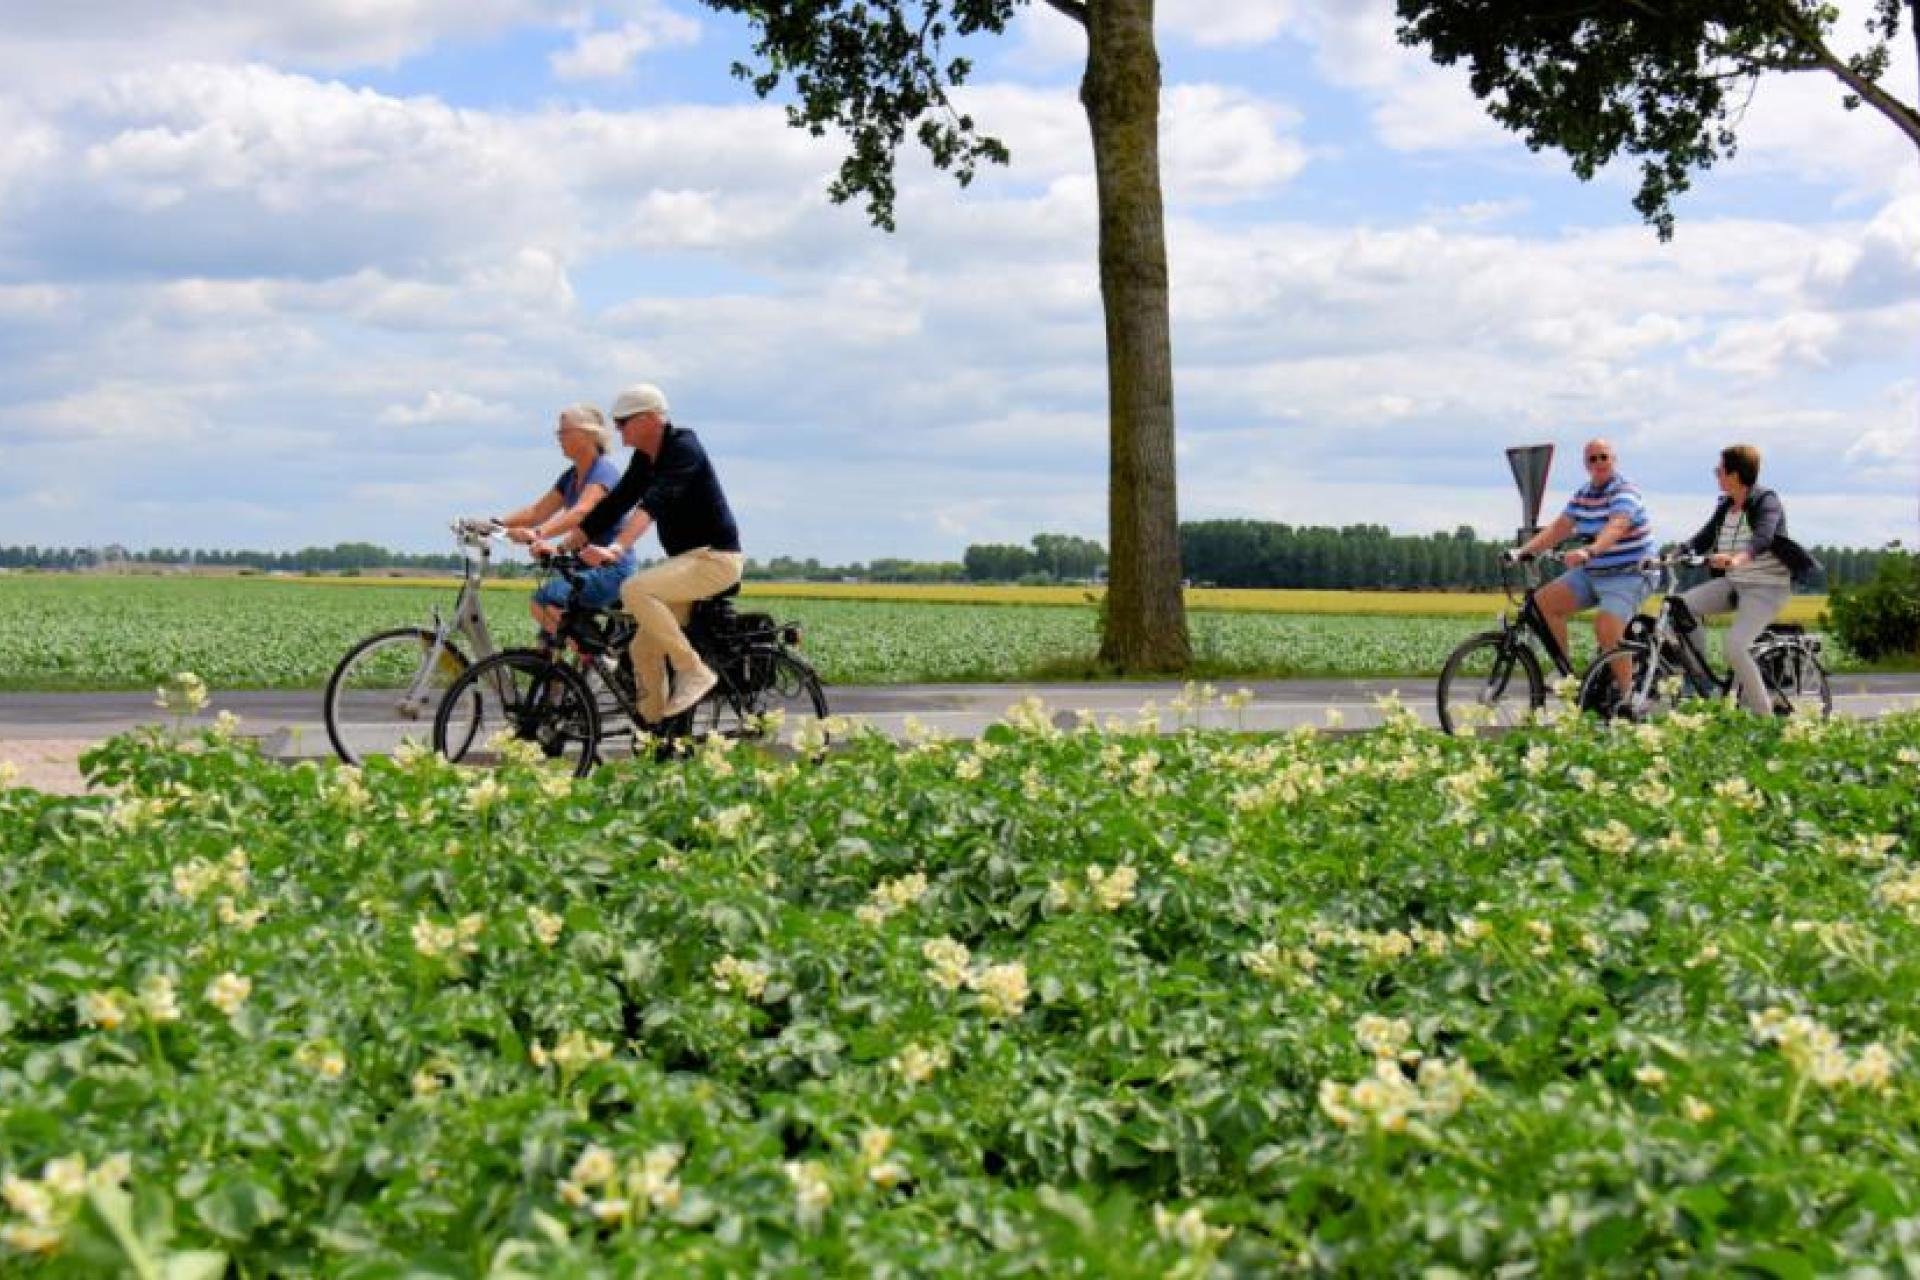 Afbeelding: foto van fietsers op landelijke weg met bomen en gewas in veld